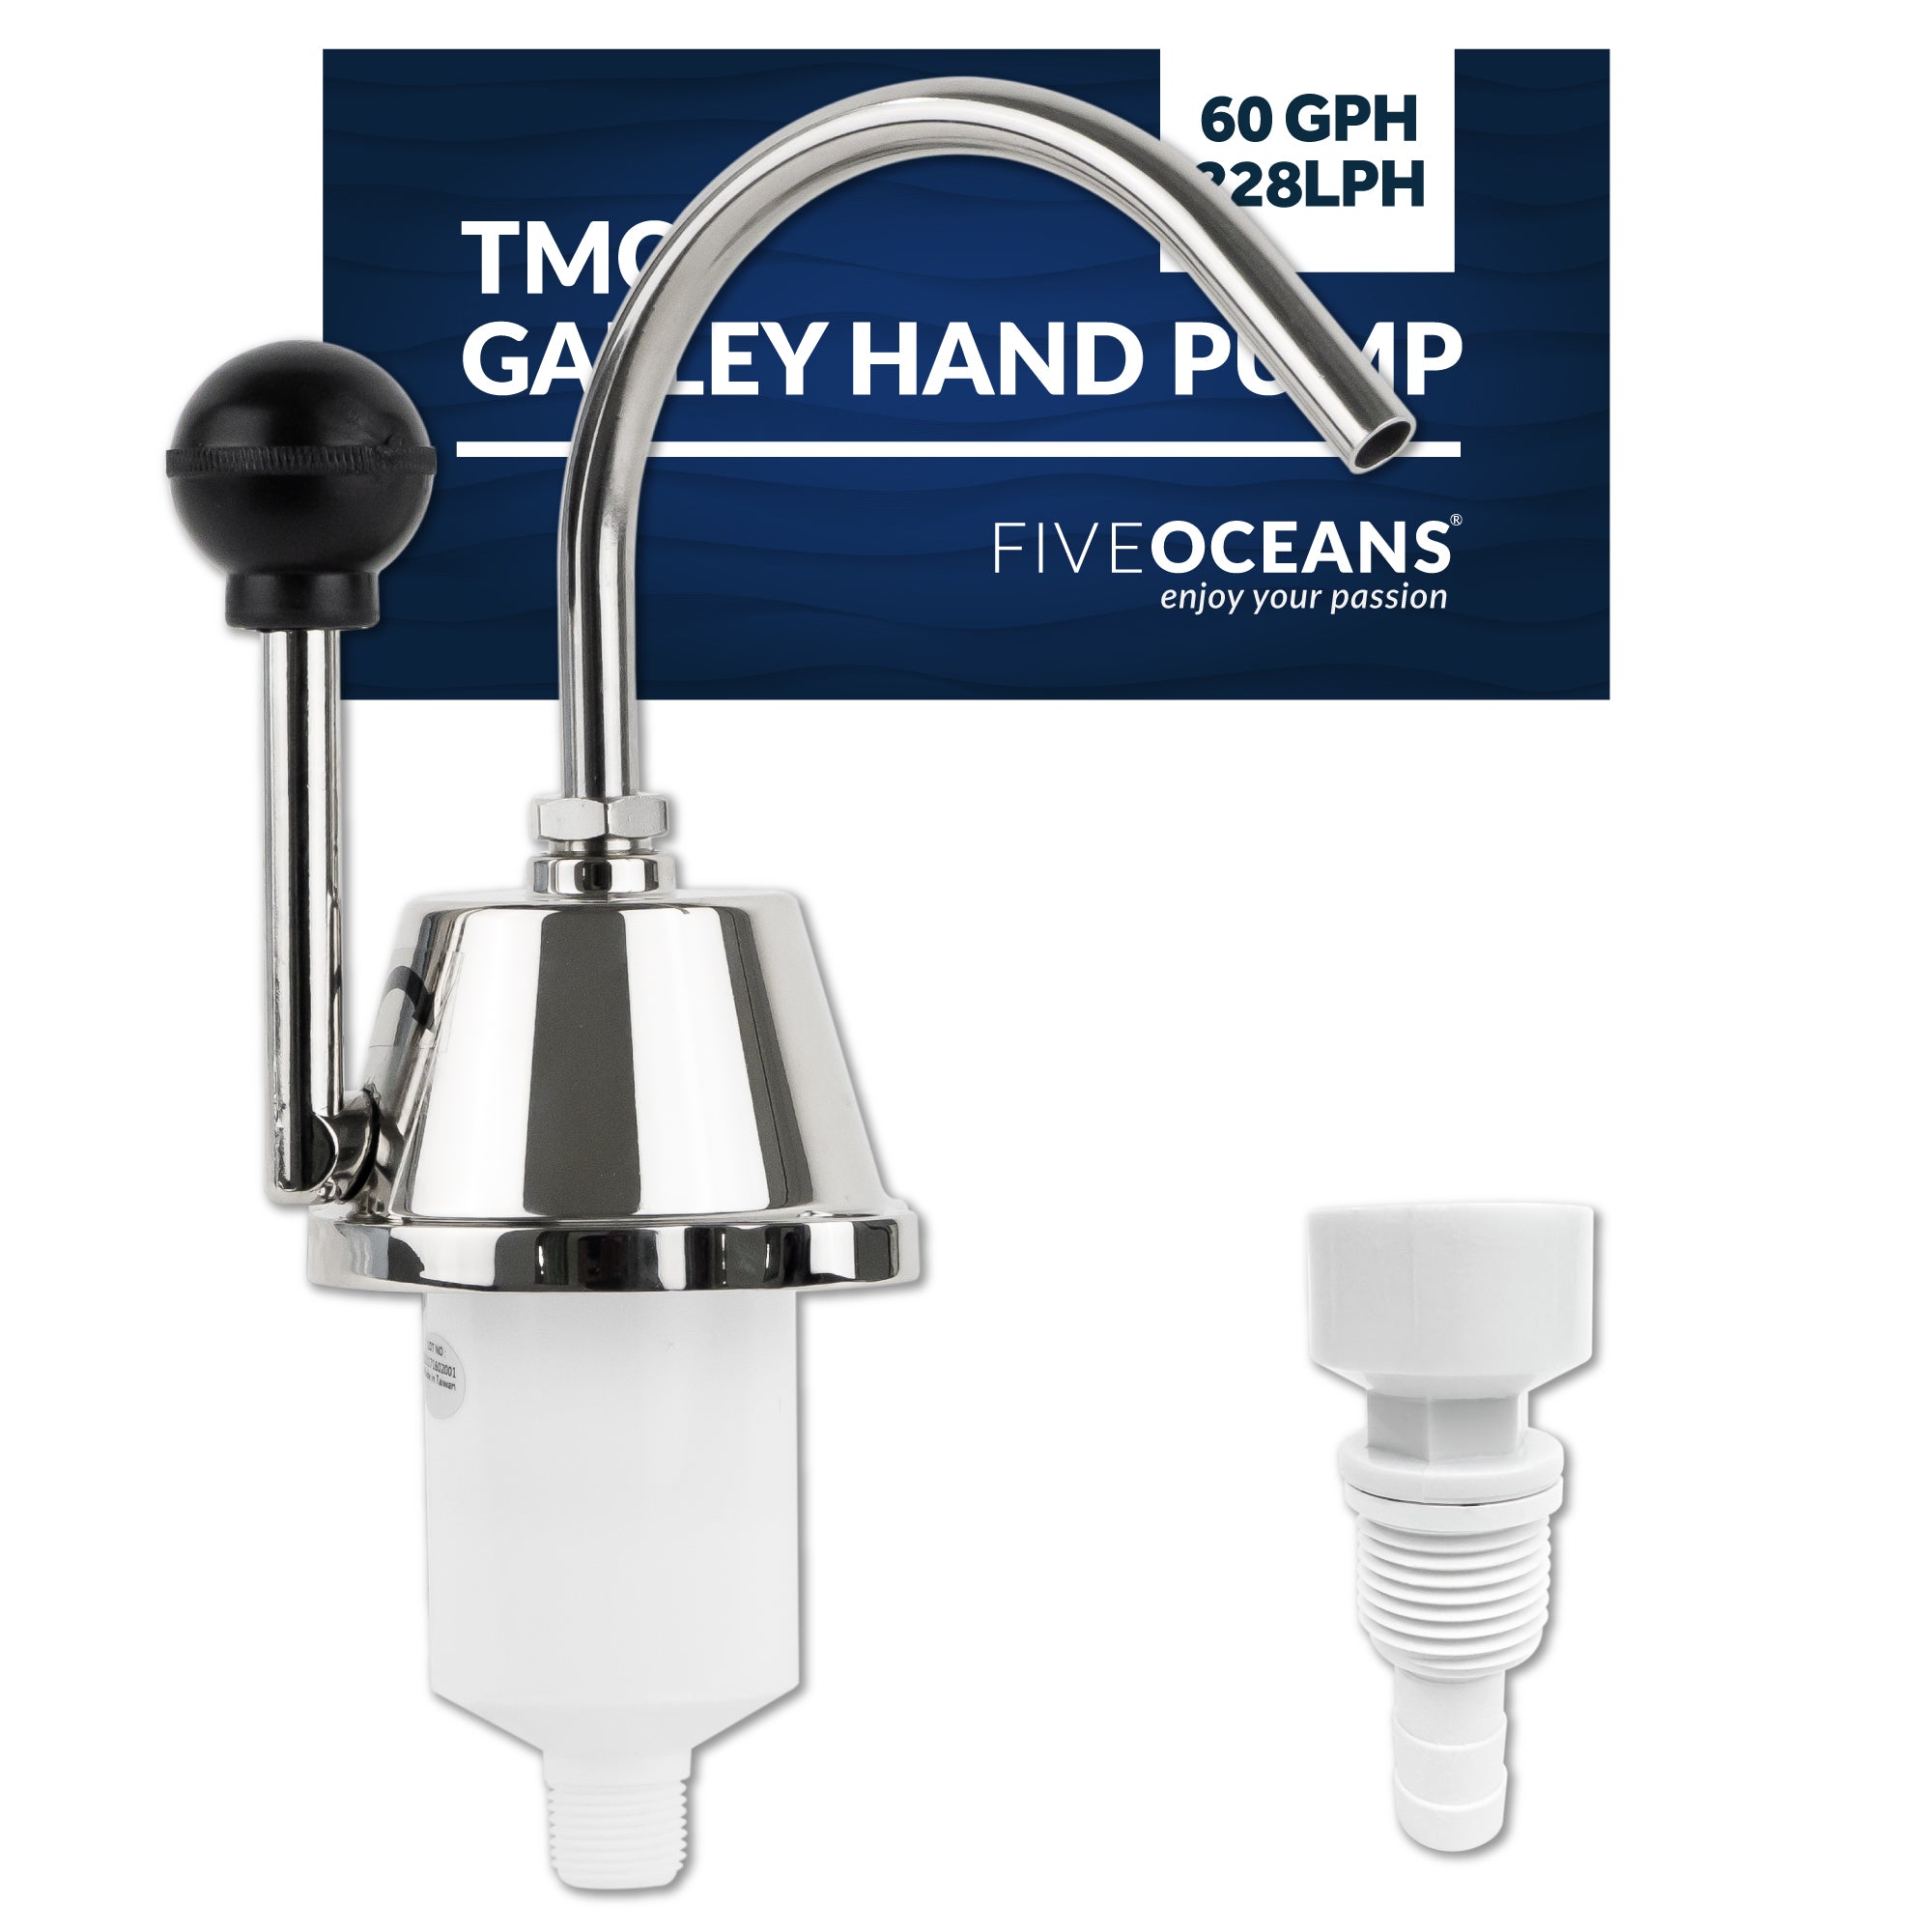 TMC Galley Hand Pump, 60 GPH/228LPH - FO742